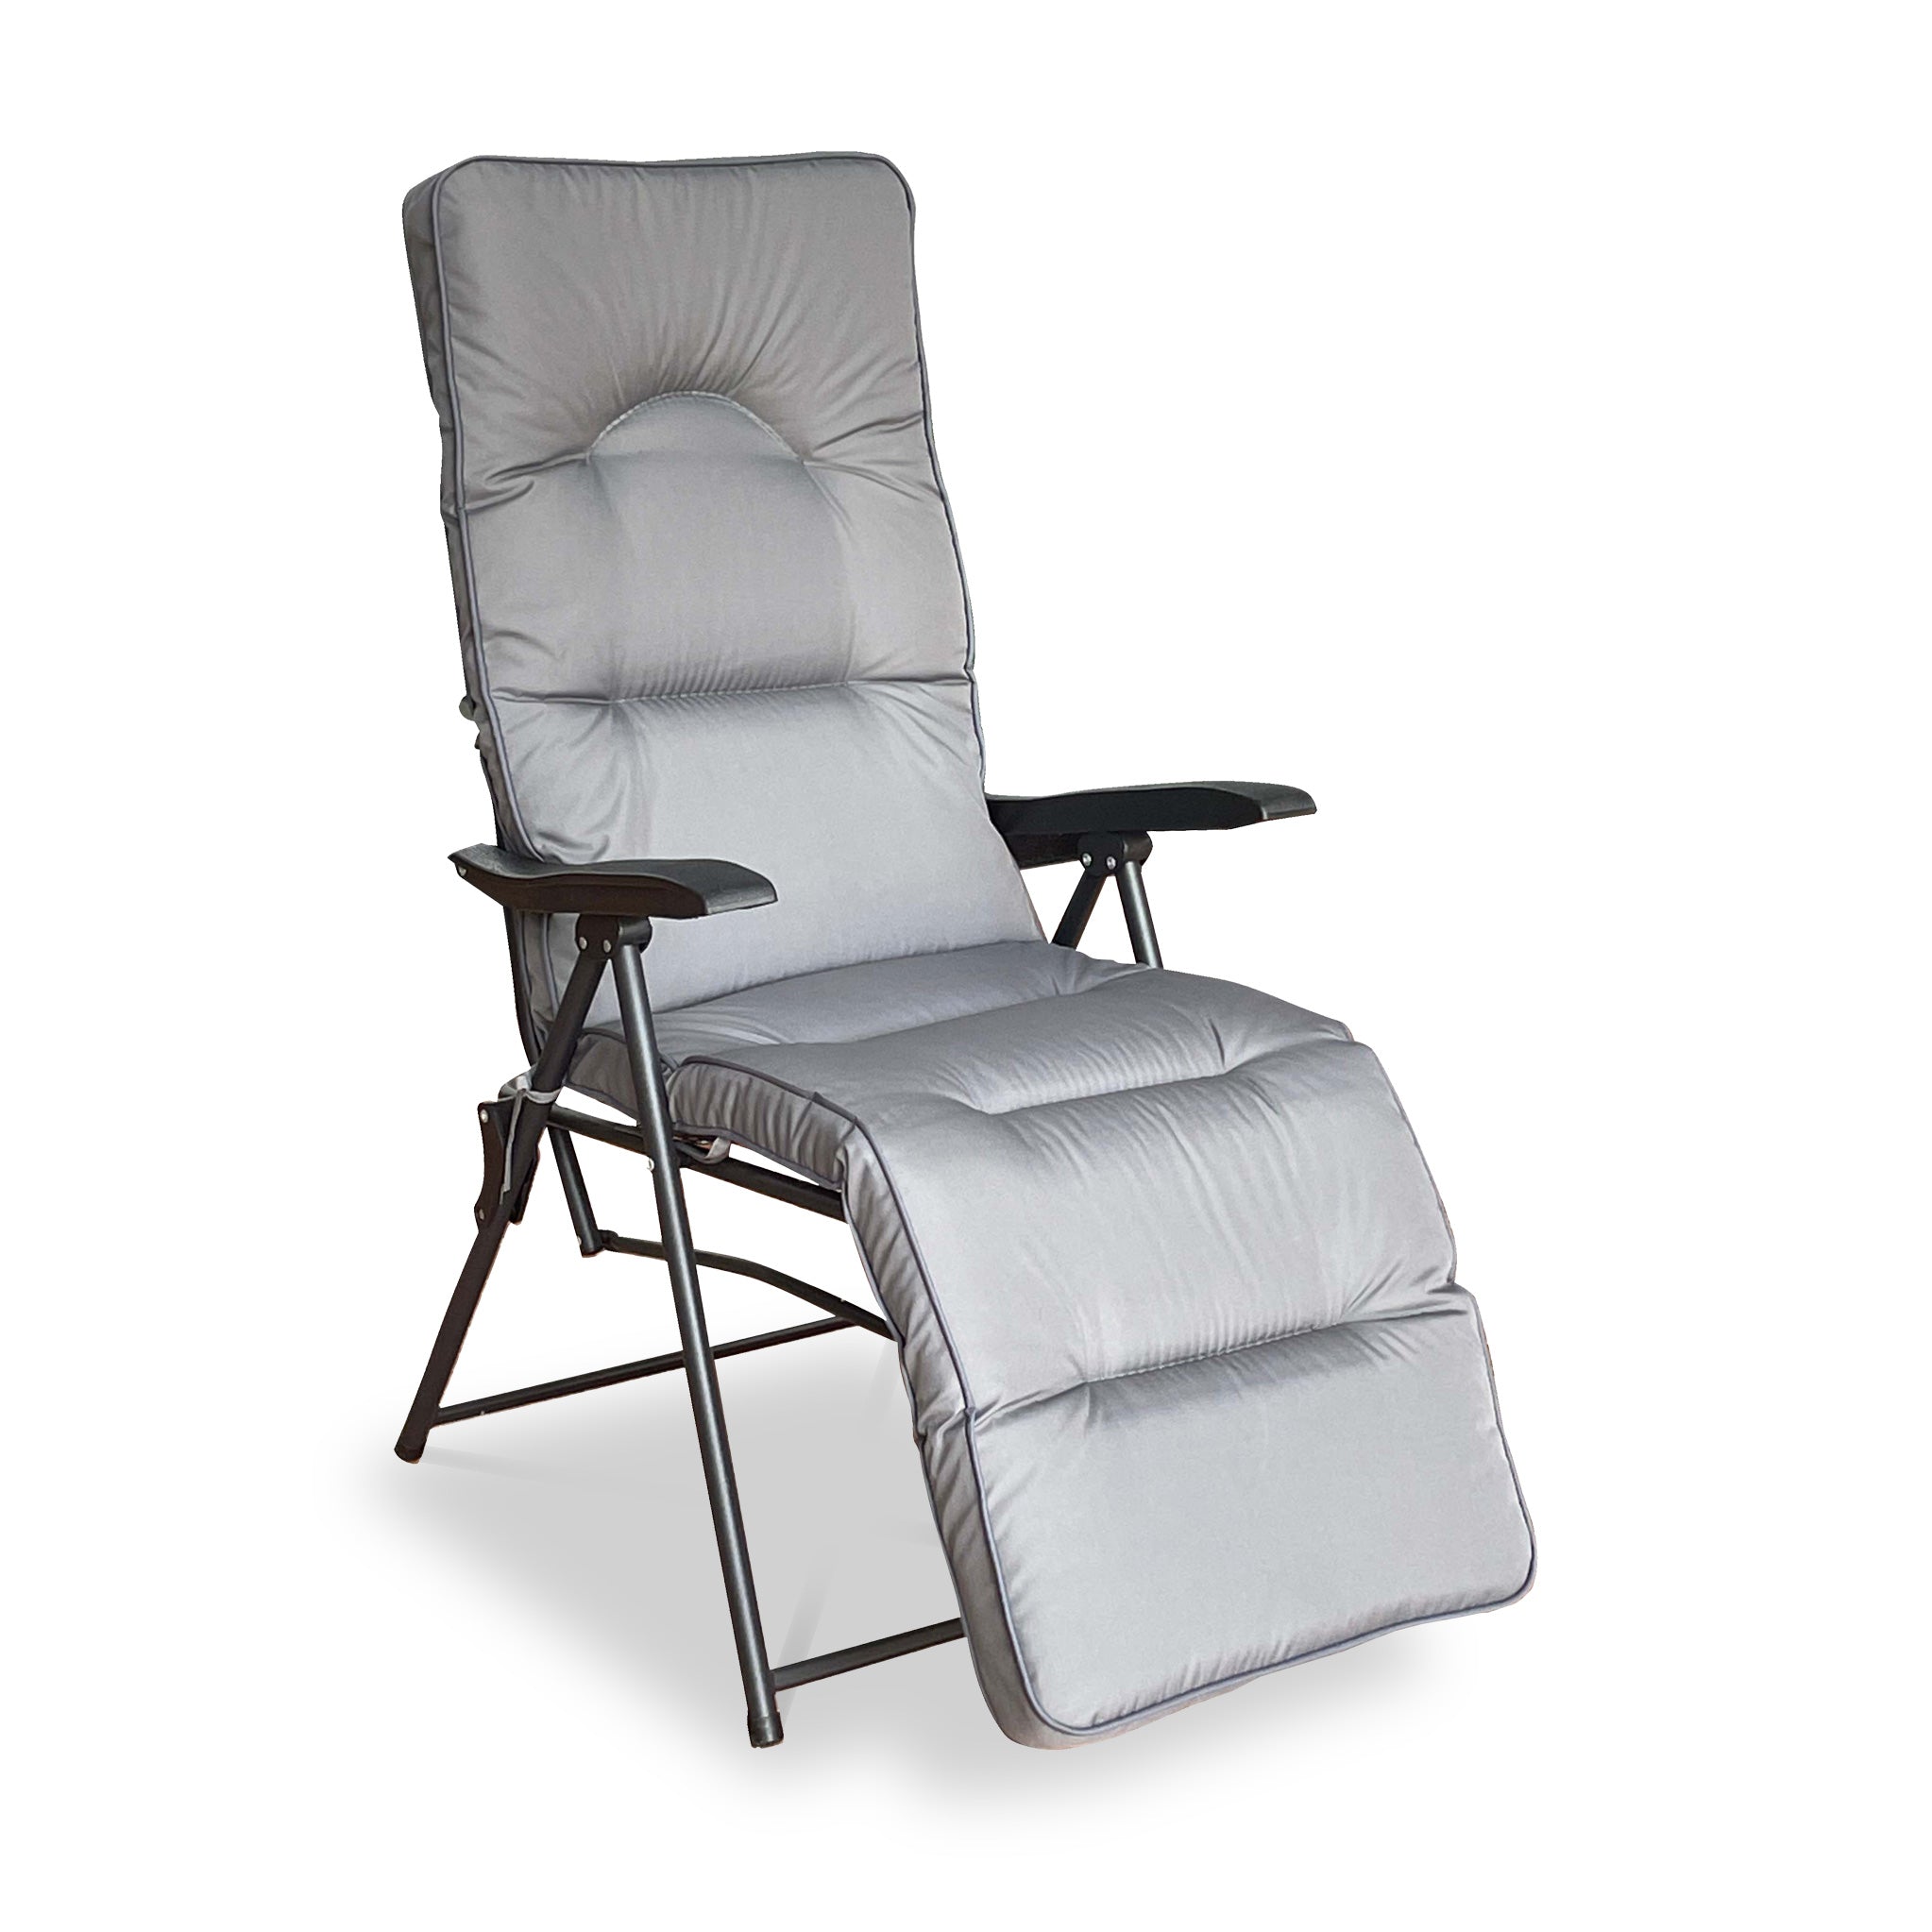 Cairo Folding Relaxer Chair Set Of 2 Outdoor Recliner Sun Loungers